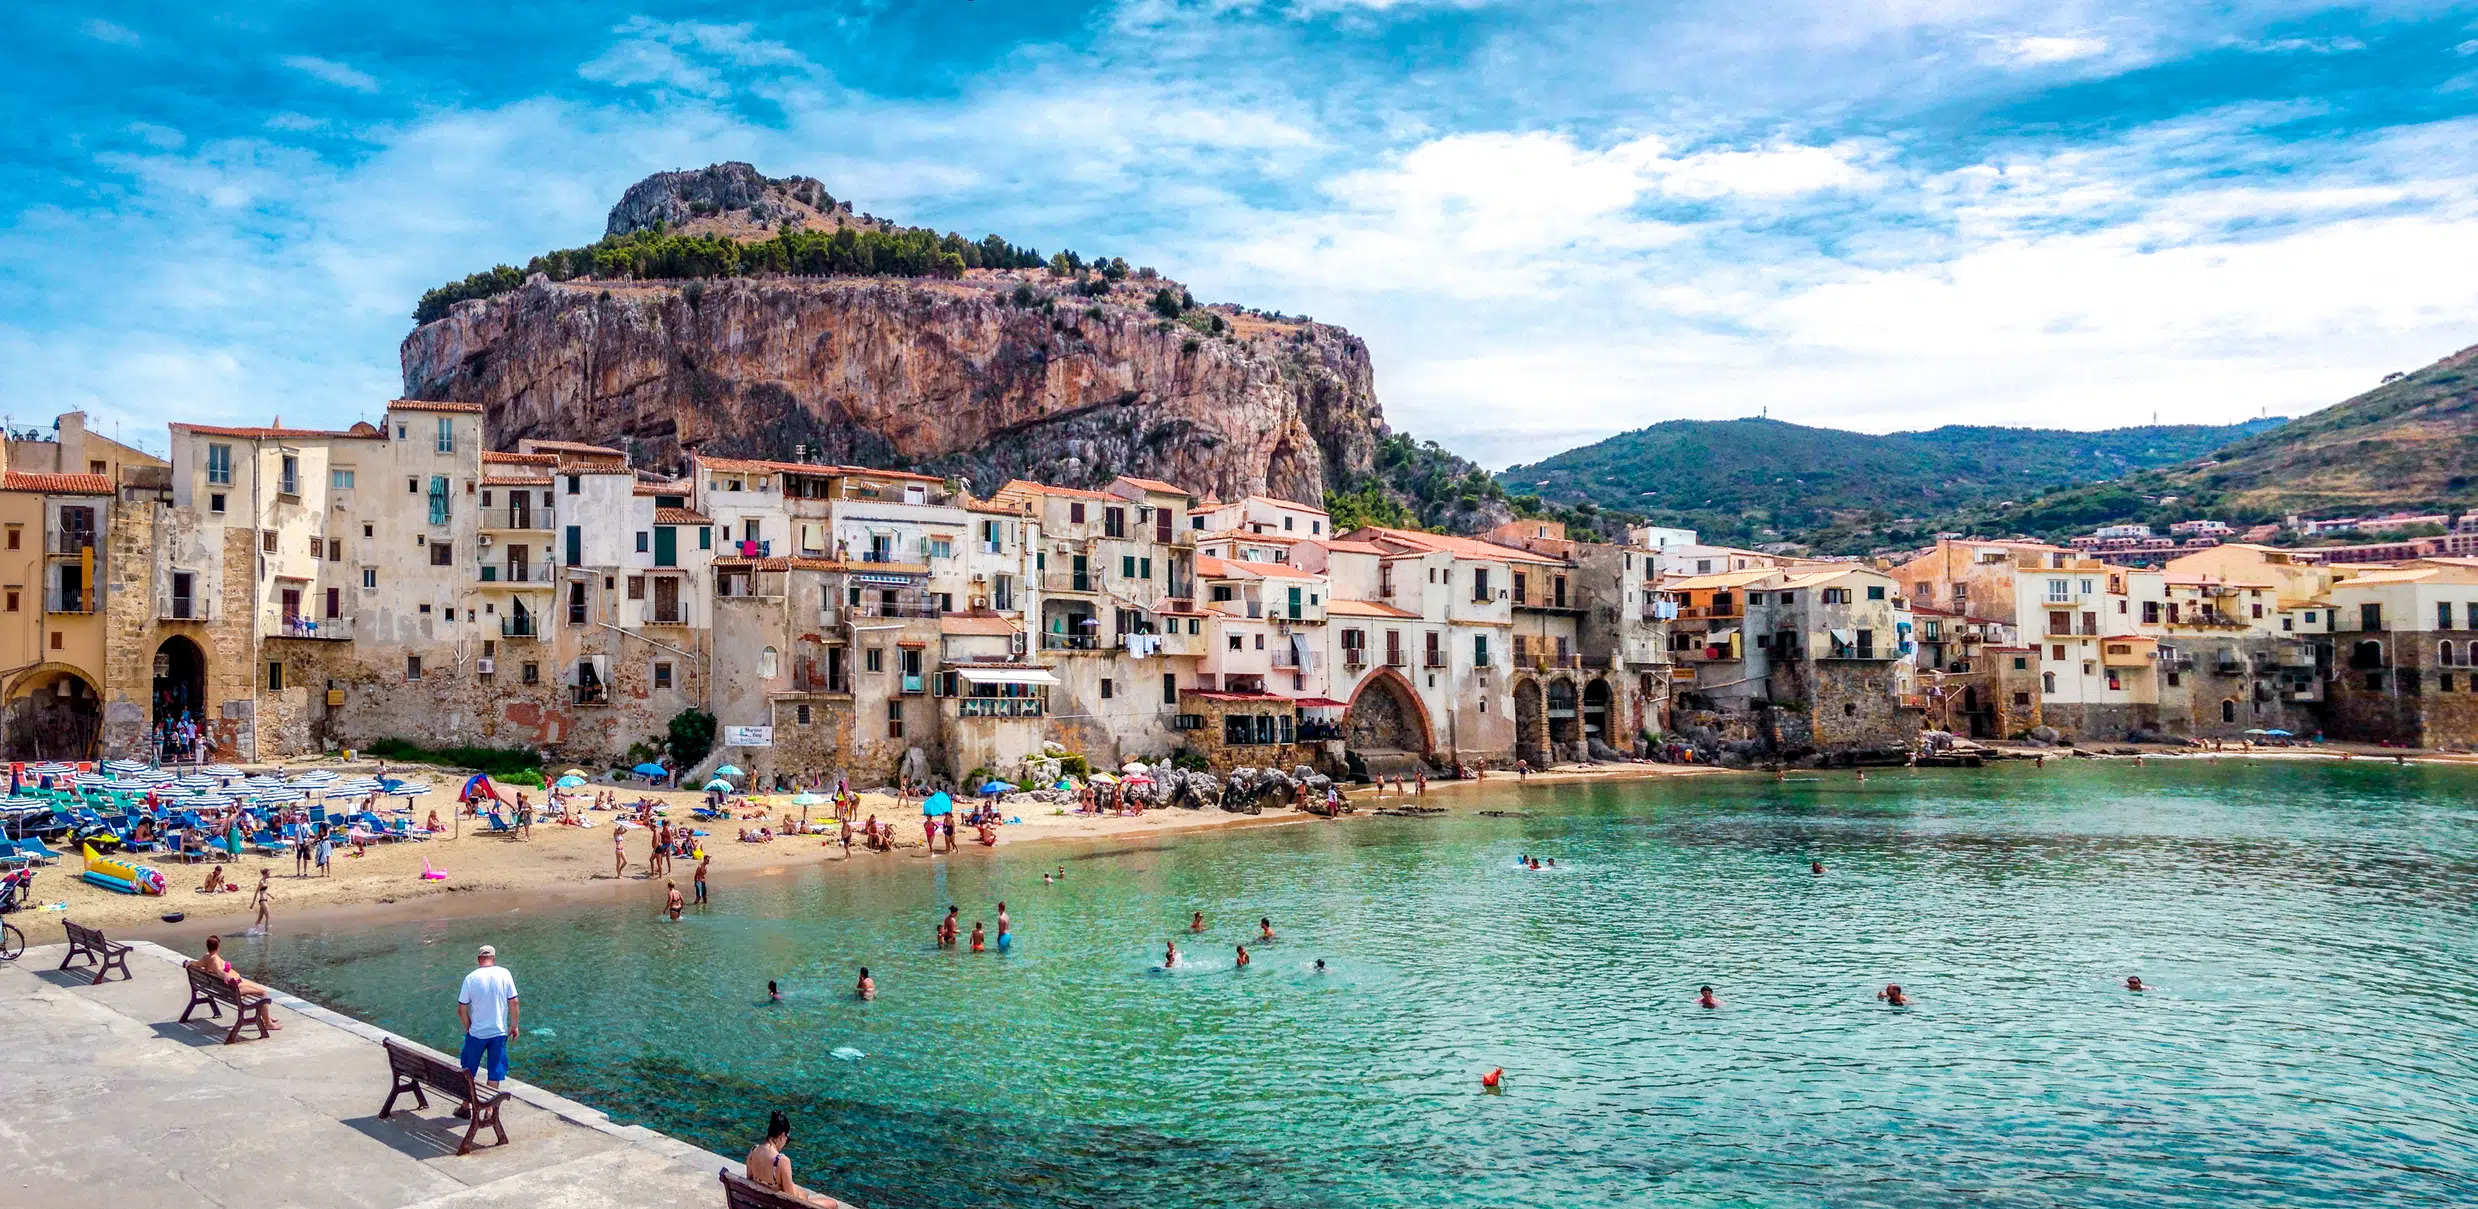 Cefalu, paradis i Italien og Sicilien